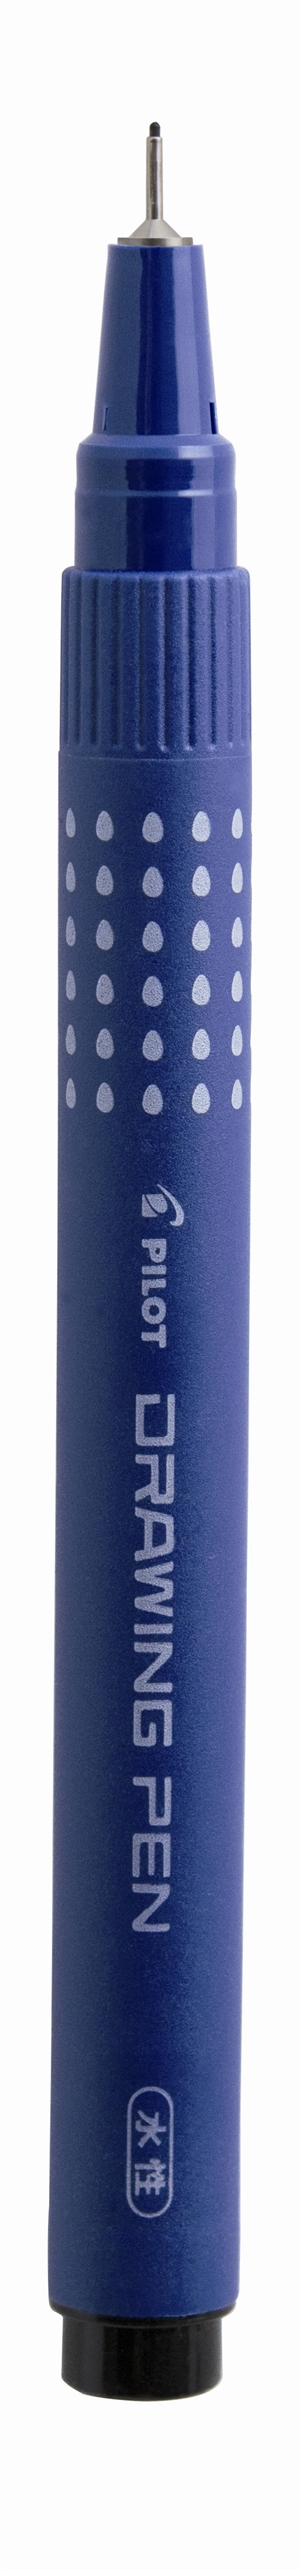 Pilot Filtpen m/hætte Drawing Pen 0,2mm negro